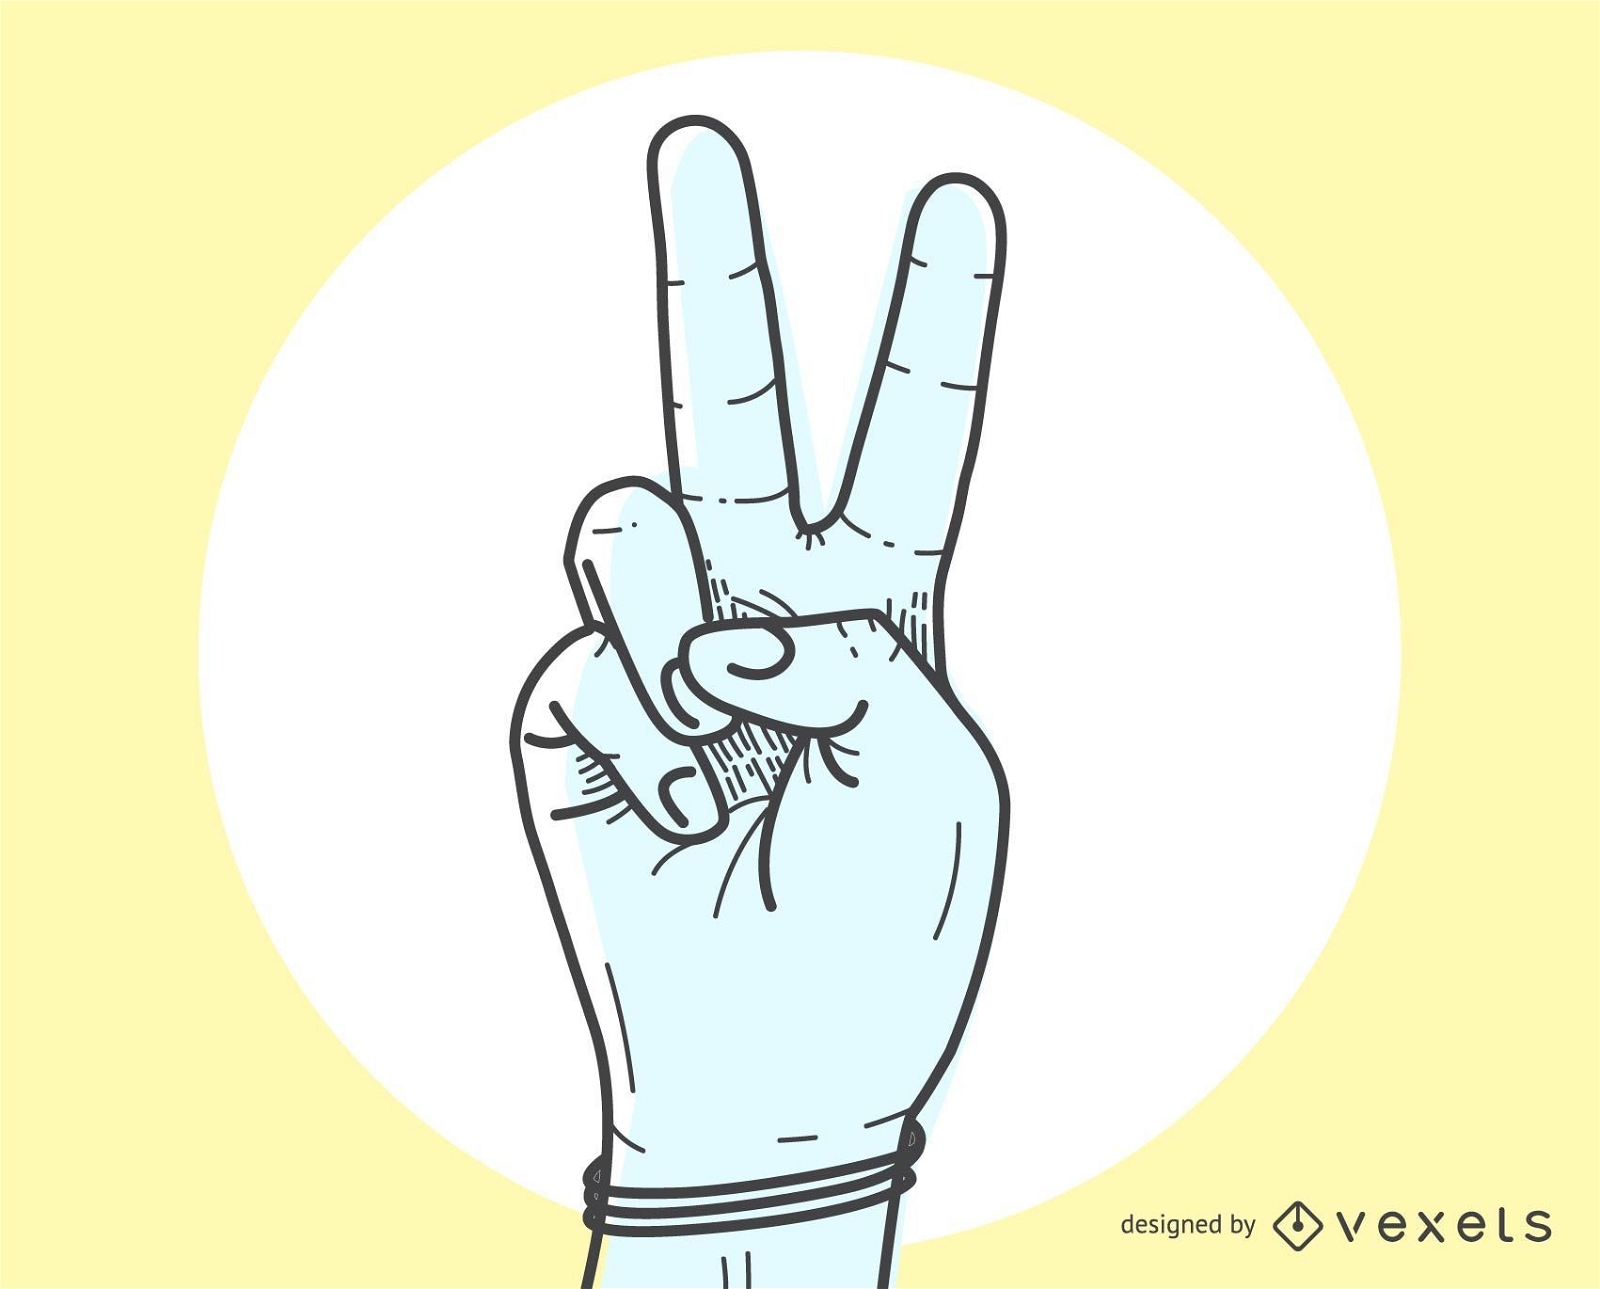 Das Friedenszeichen V per Handgeste